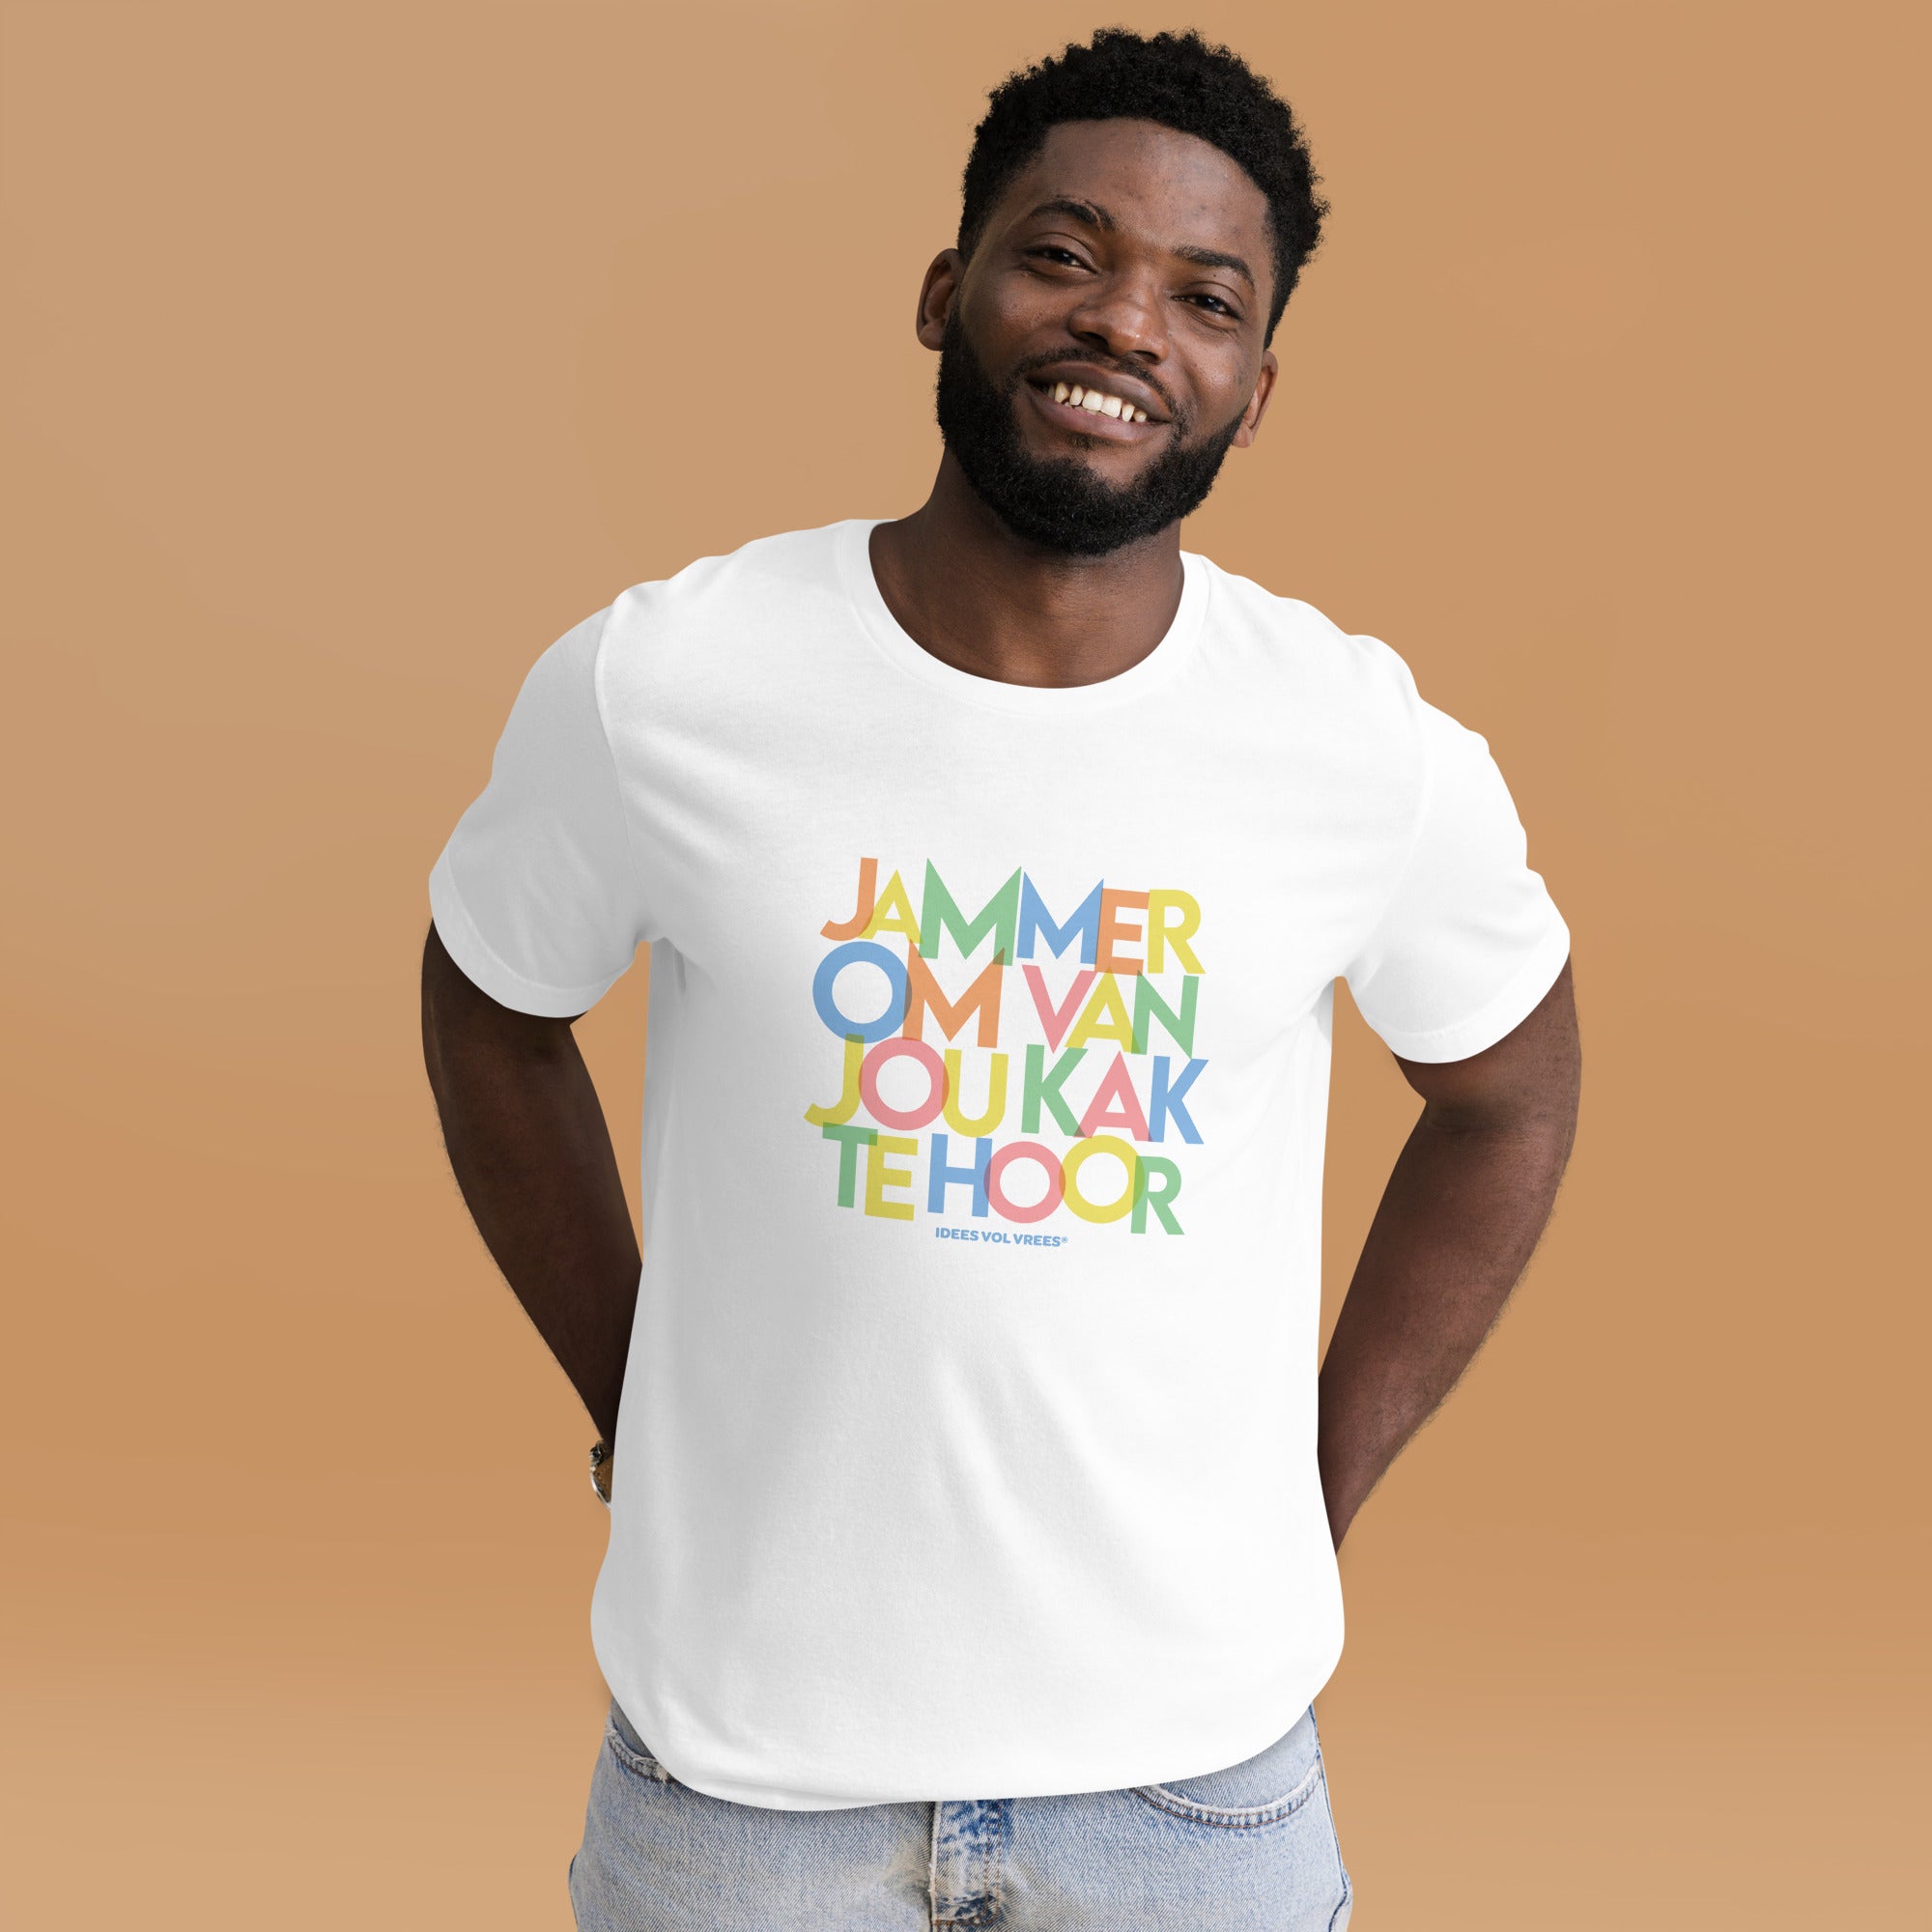 [INTERNASIONAAL] Jammer om van jou kak... Men's T-shirt